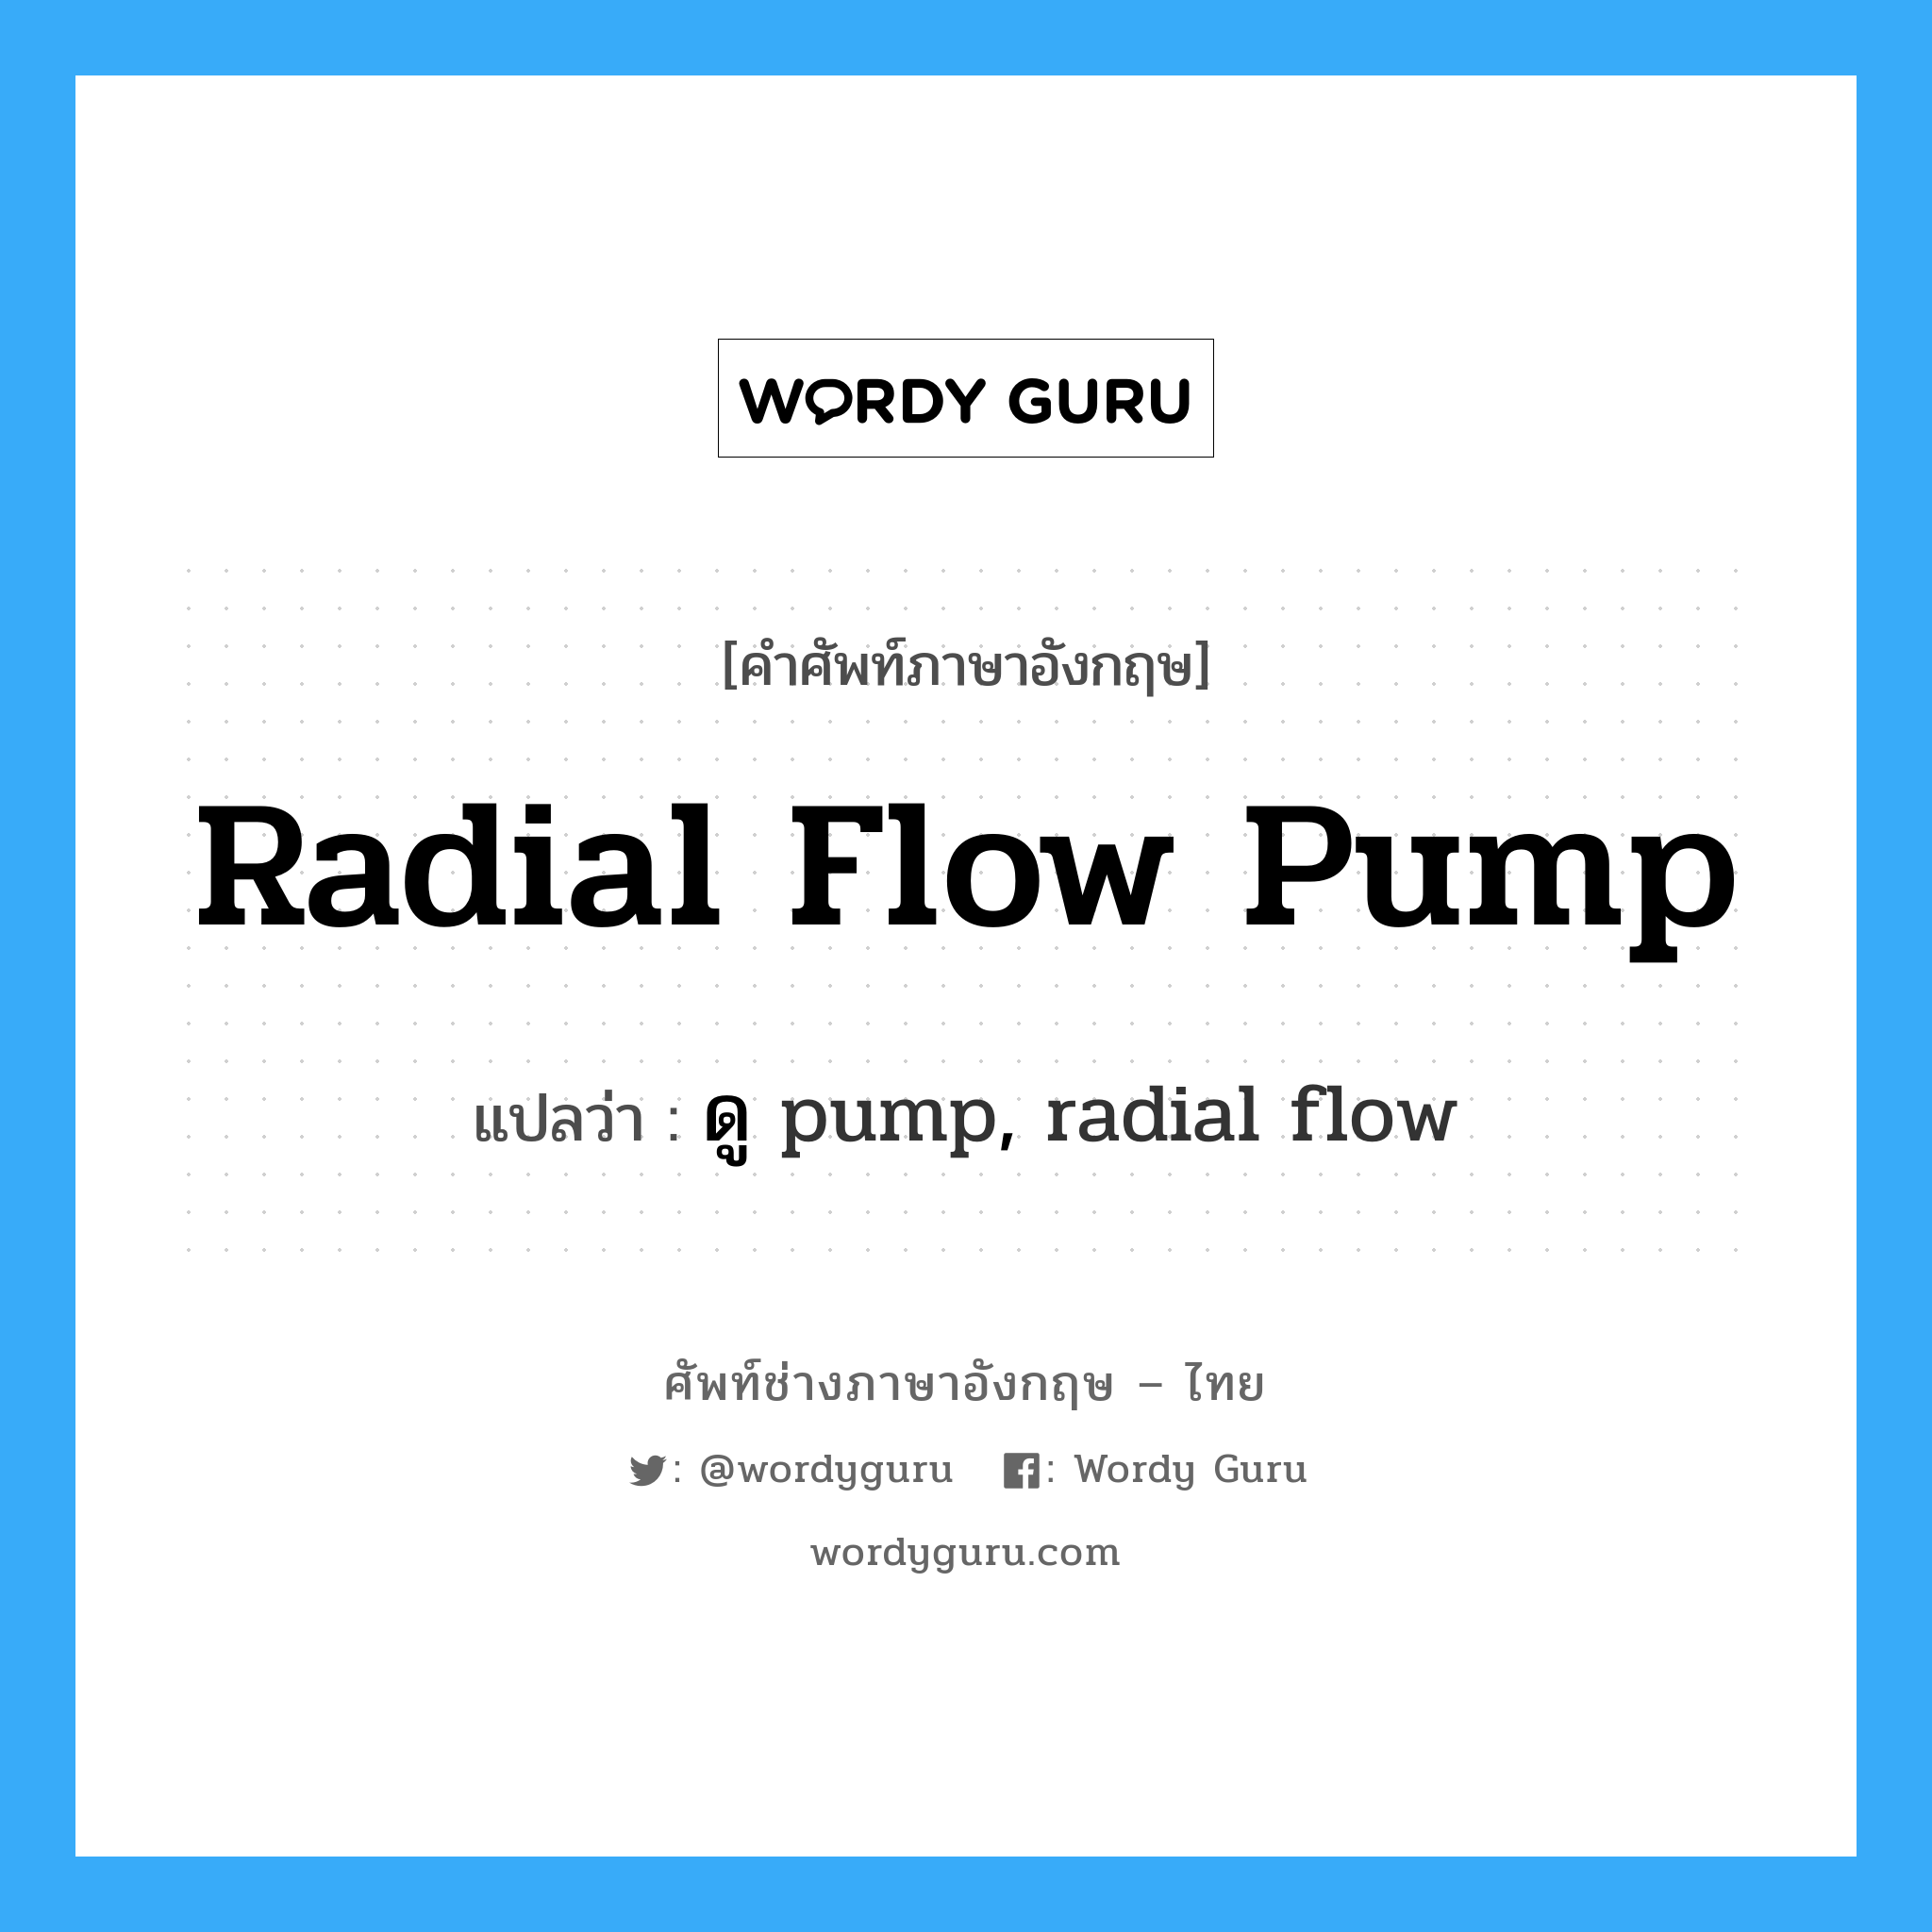 ดู pump, radial flow ภาษาอังกฤษ?, คำศัพท์ช่างภาษาอังกฤษ - ไทย ดู pump, radial flow คำศัพท์ภาษาอังกฤษ ดู pump, radial flow แปลว่า radial flow pump